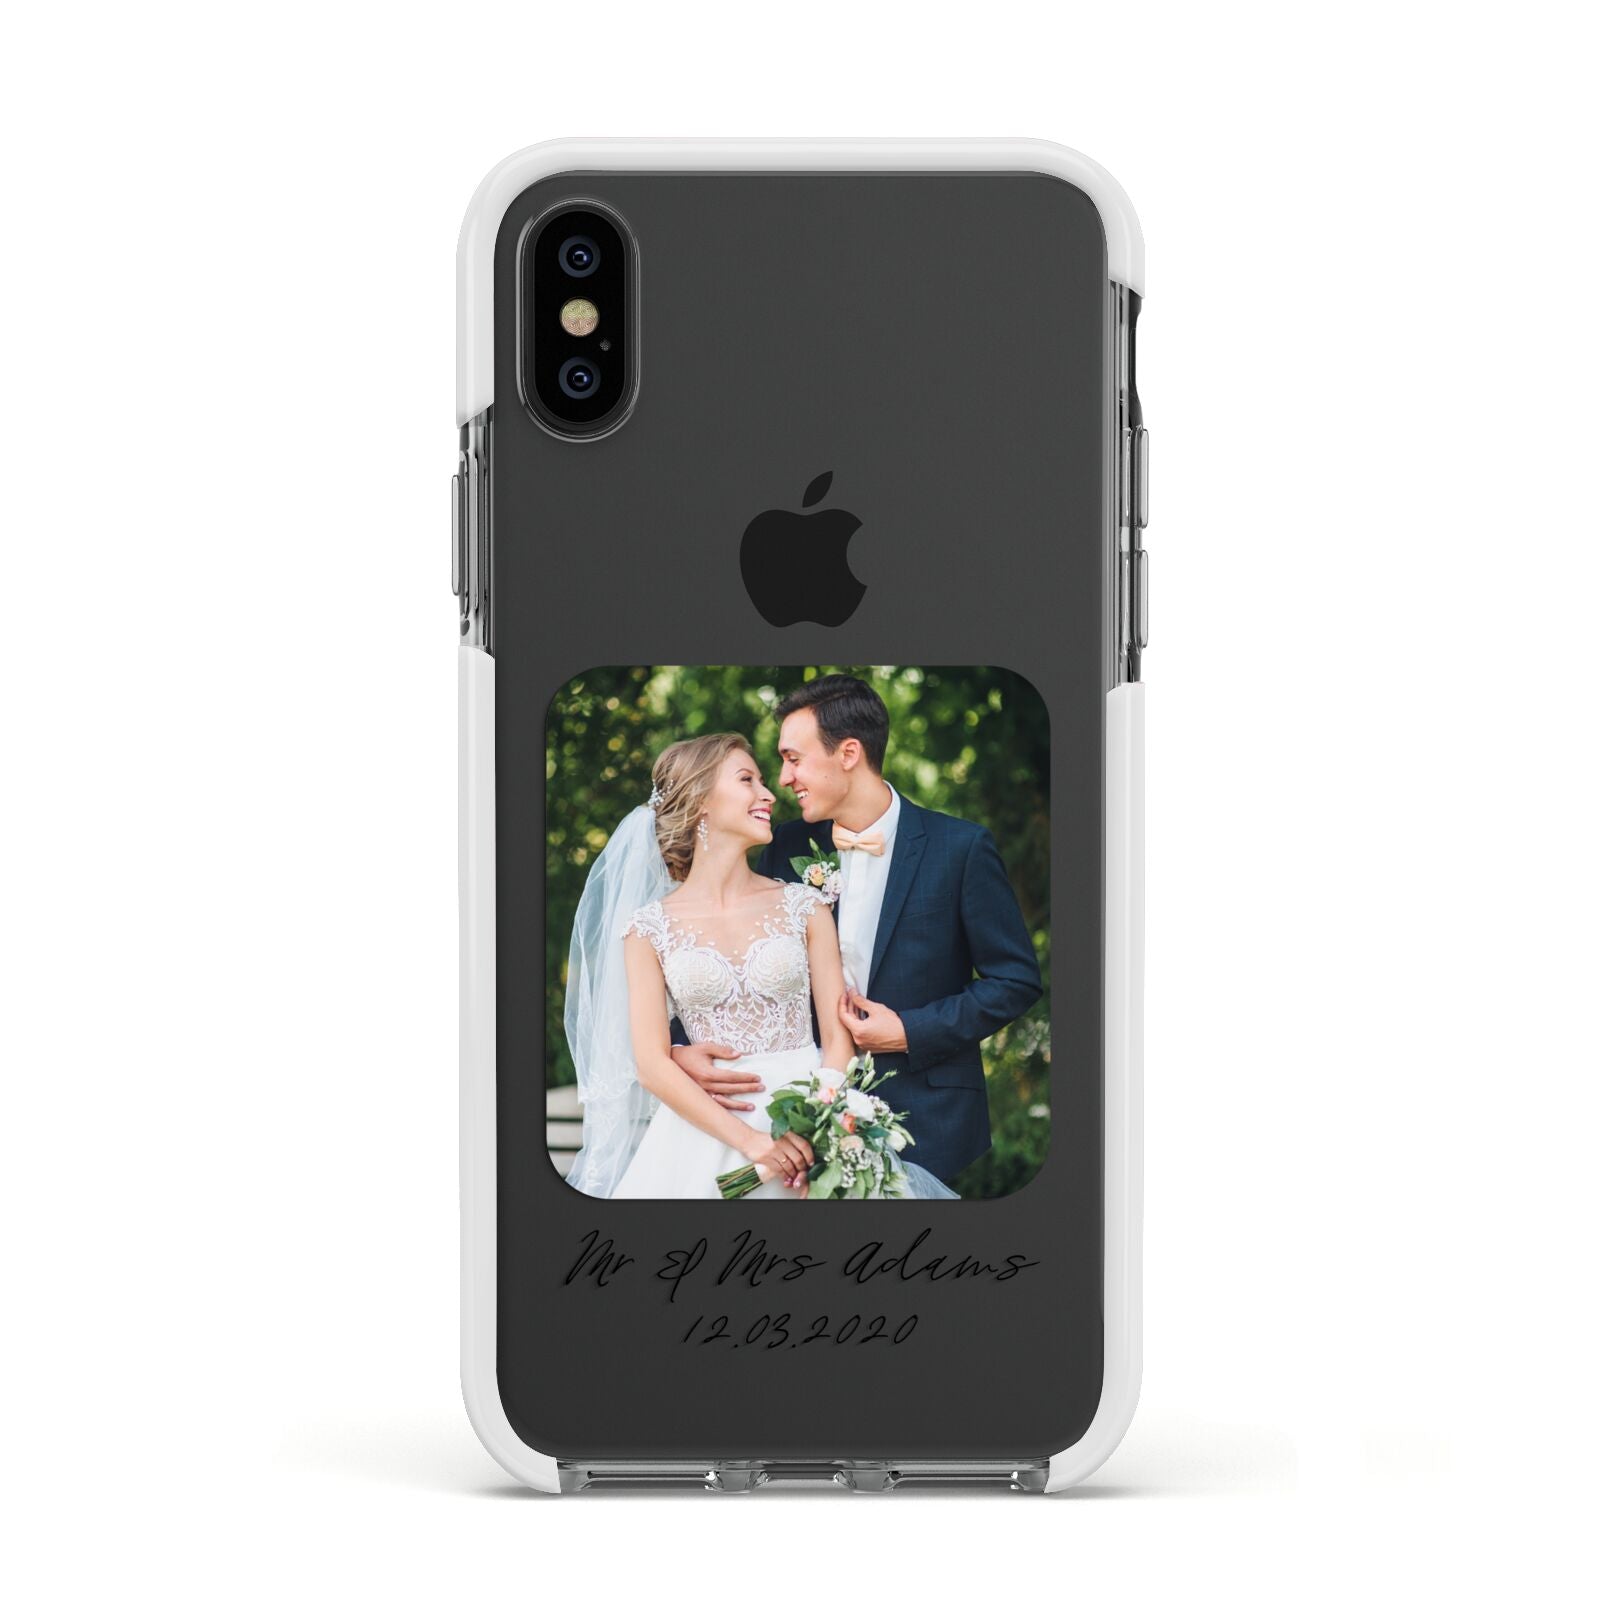 Wedding Photo Upload Keepsake with Text Apple iPhone Xs Impact Case White Edge on Black Phone